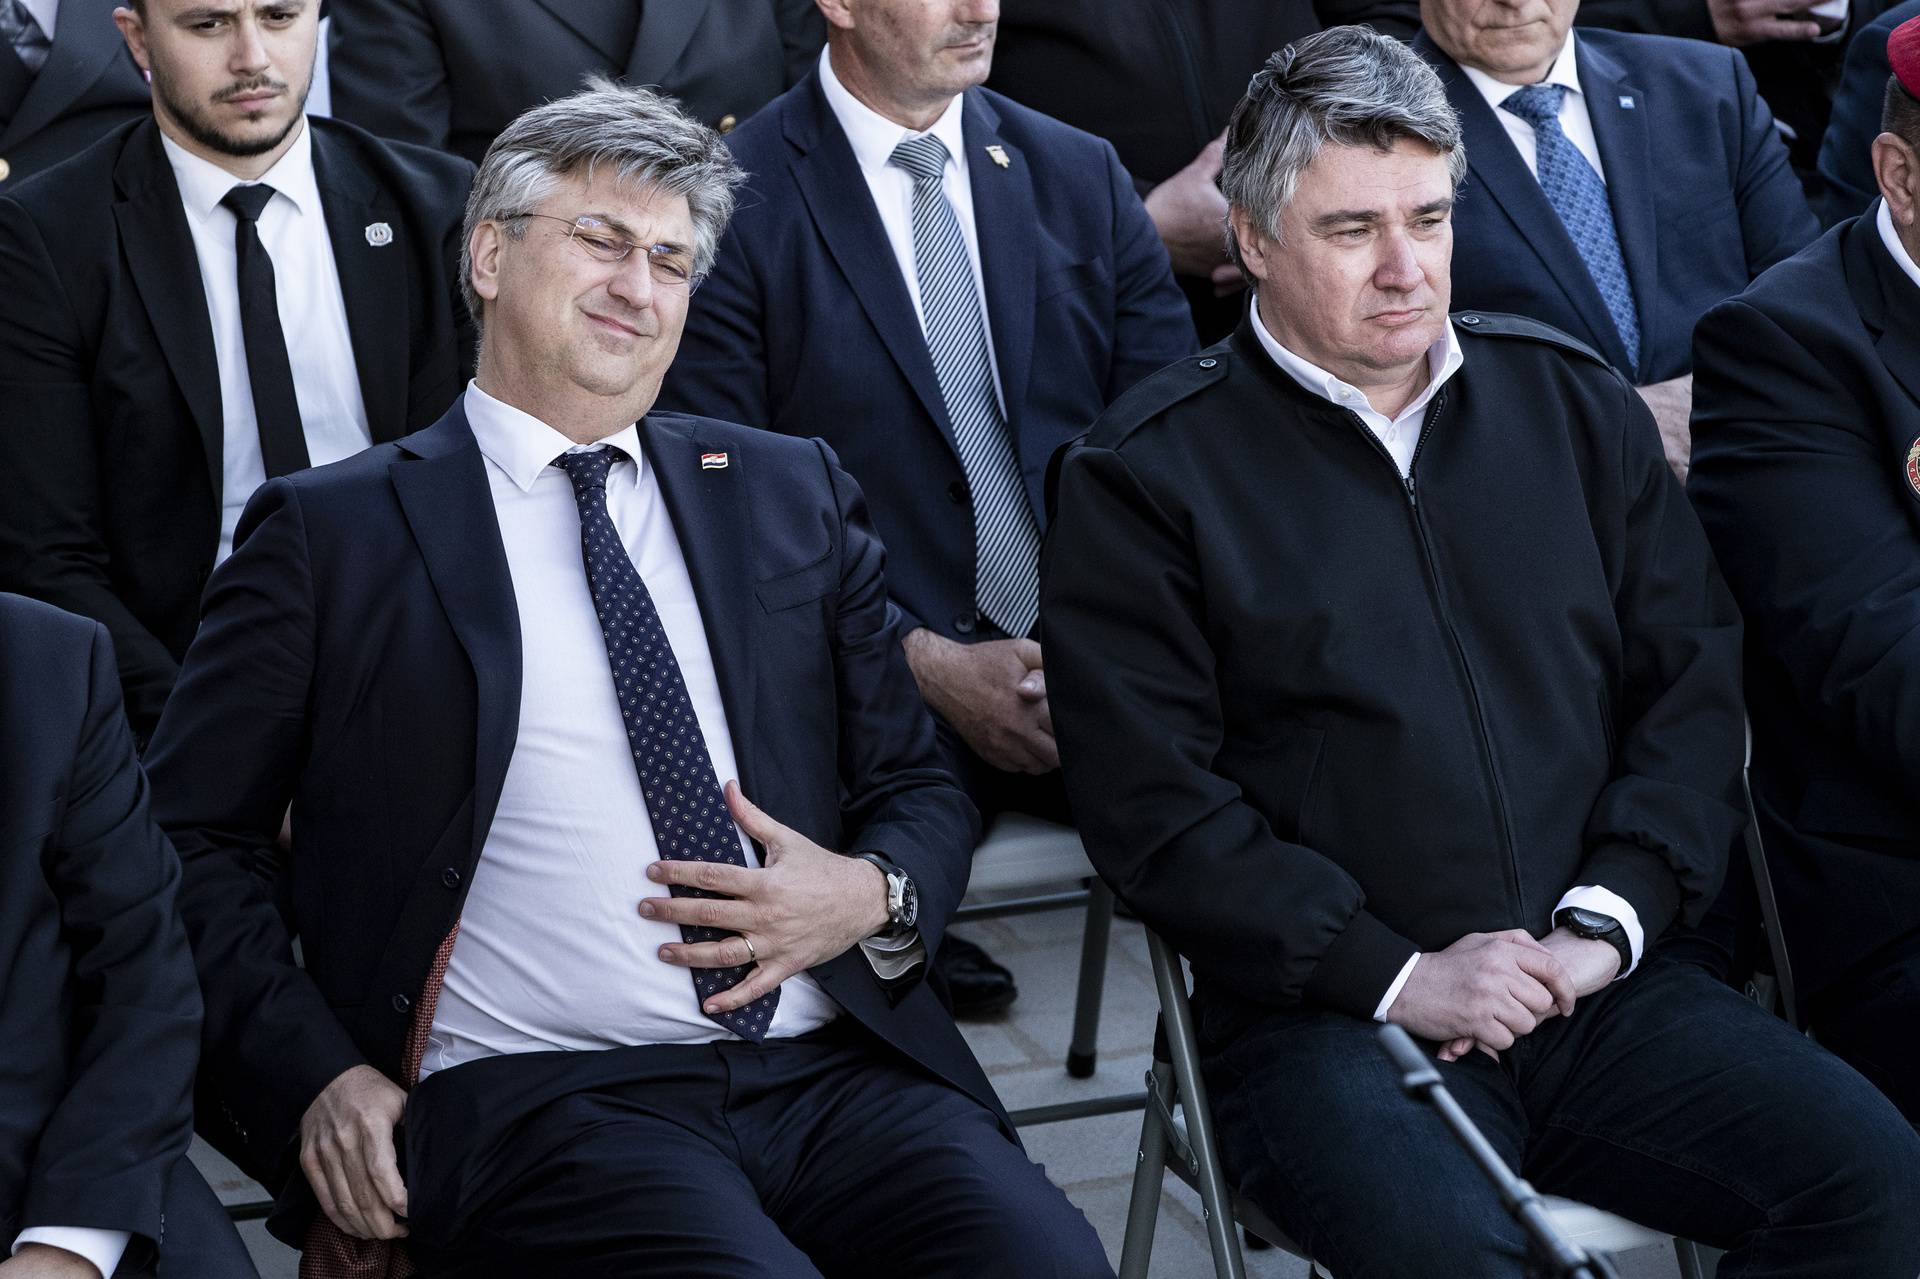 FOTO Plenković i Milanović sjeli su jedan kraj drugoga, ali na licima im nije bilo oduševljenja